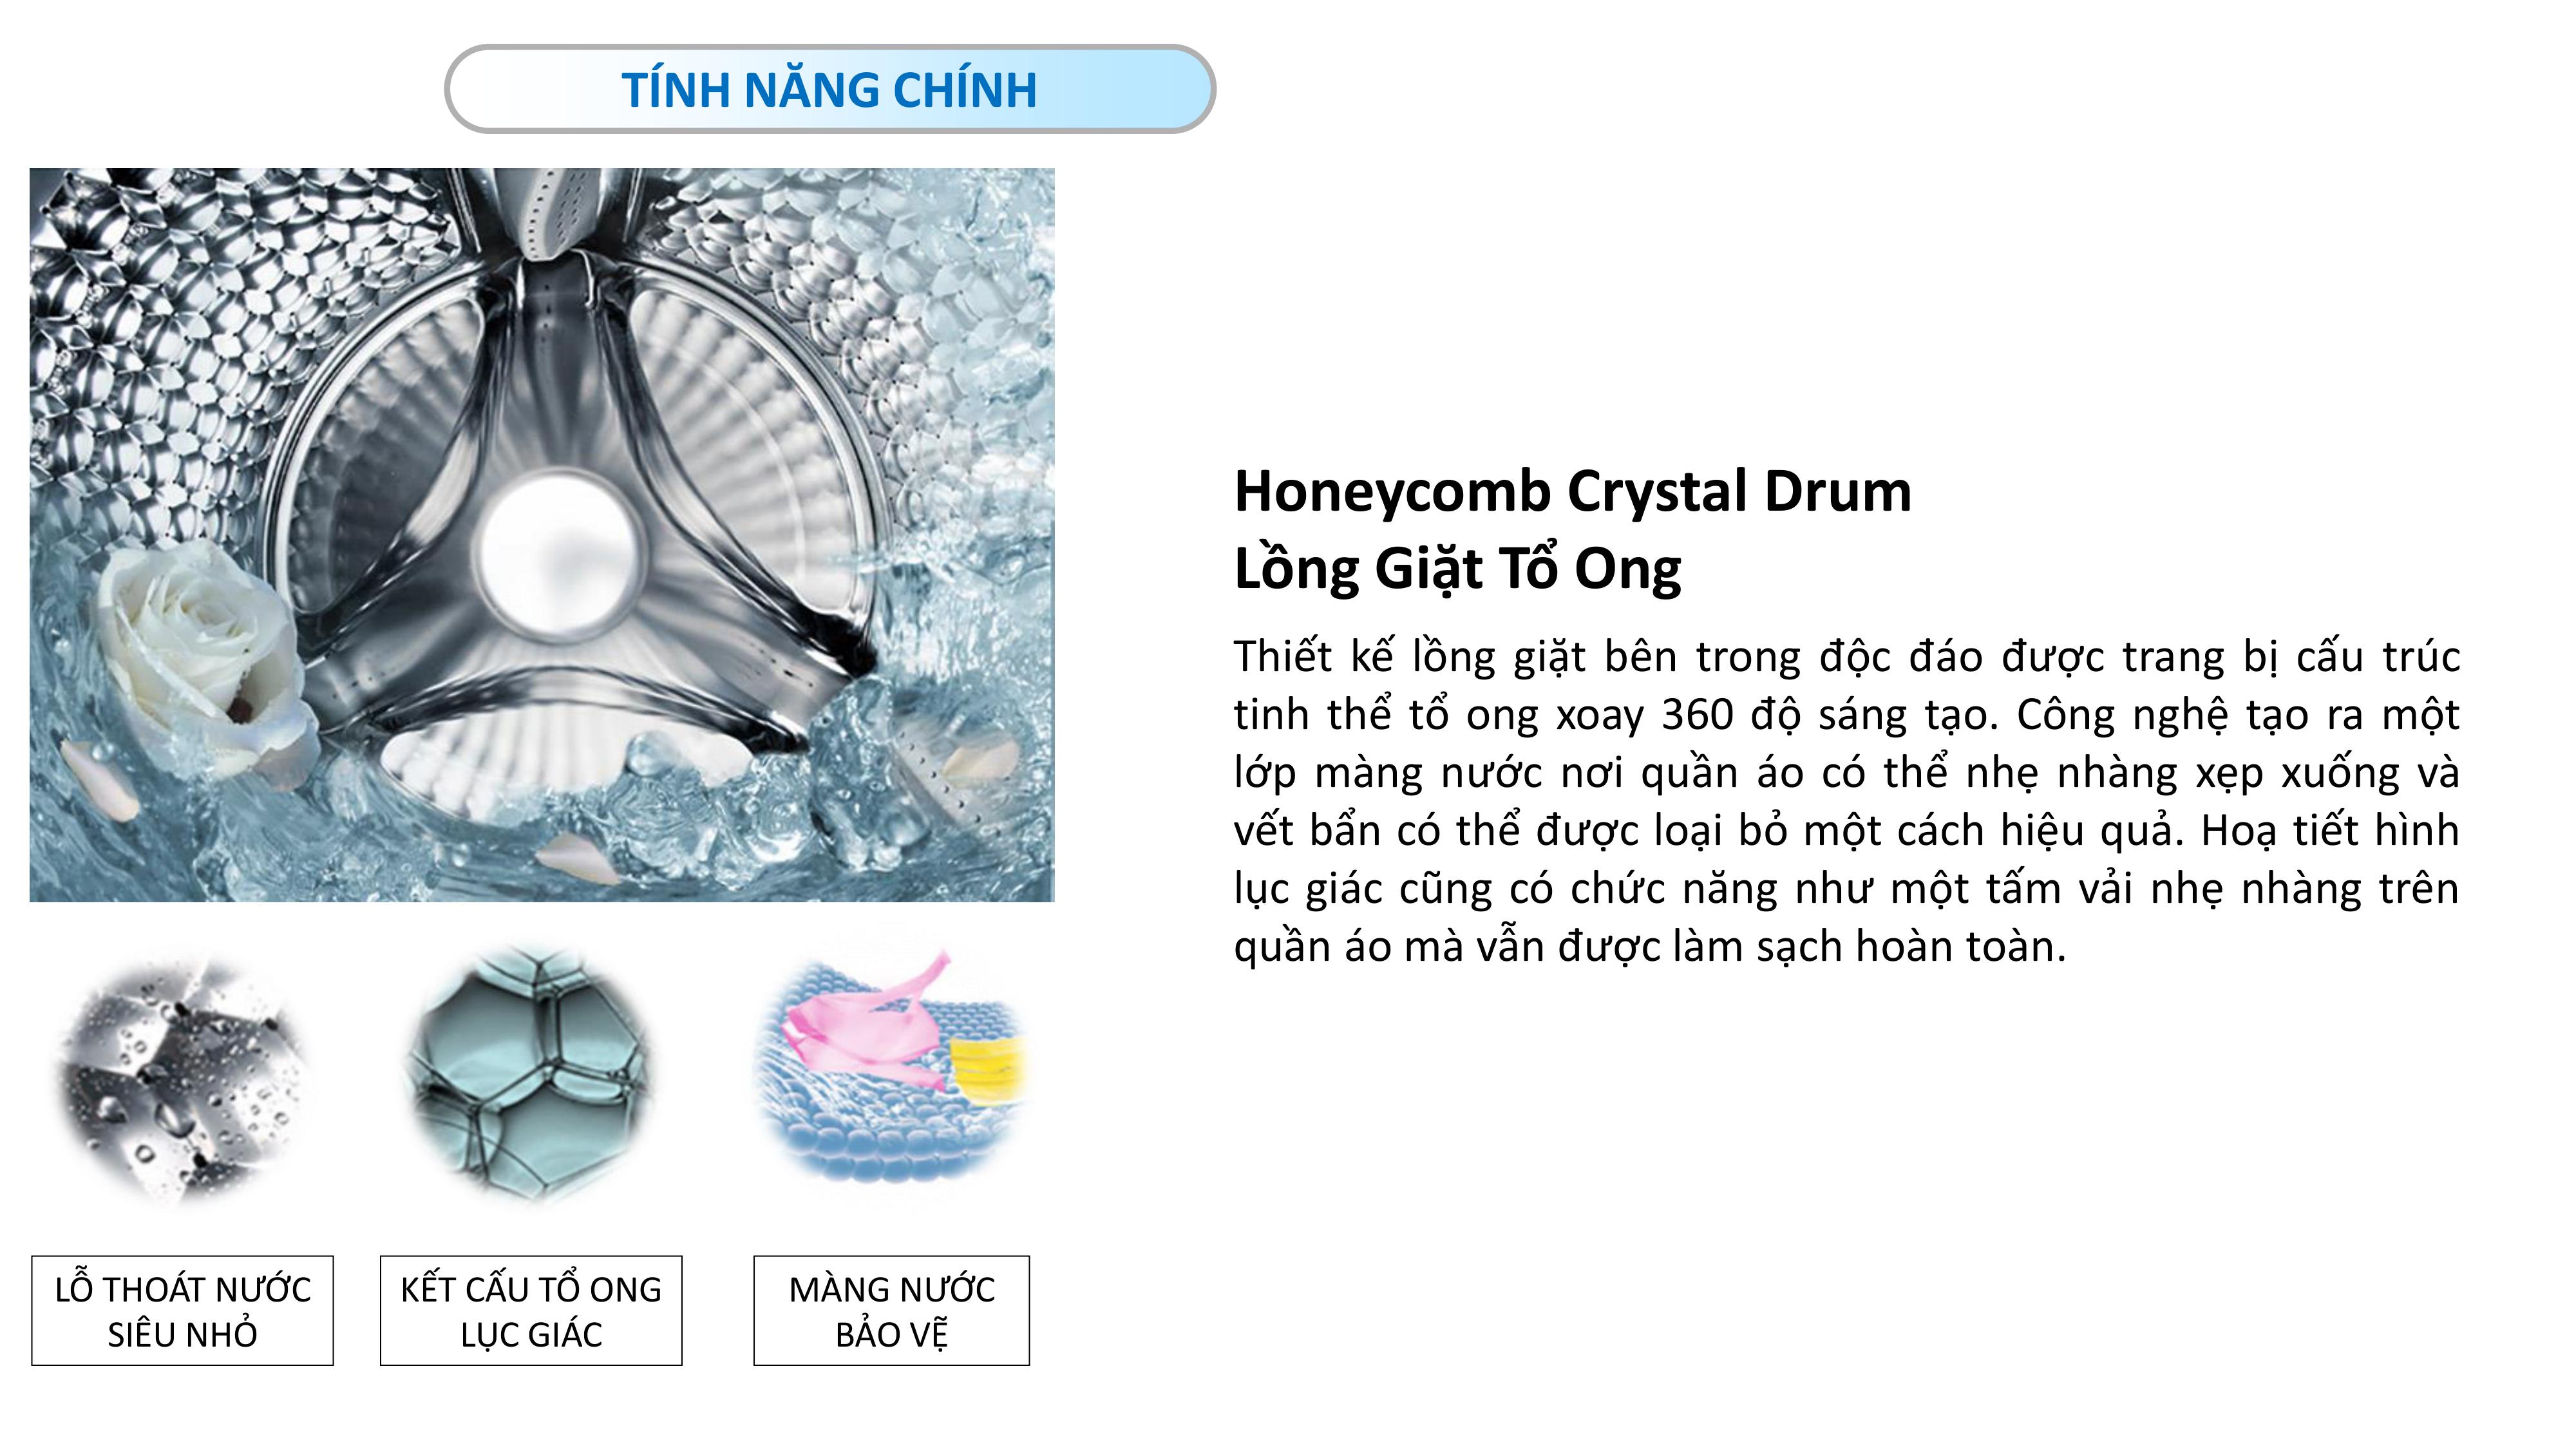 TCL washing-machine k08 Honeycomb drum